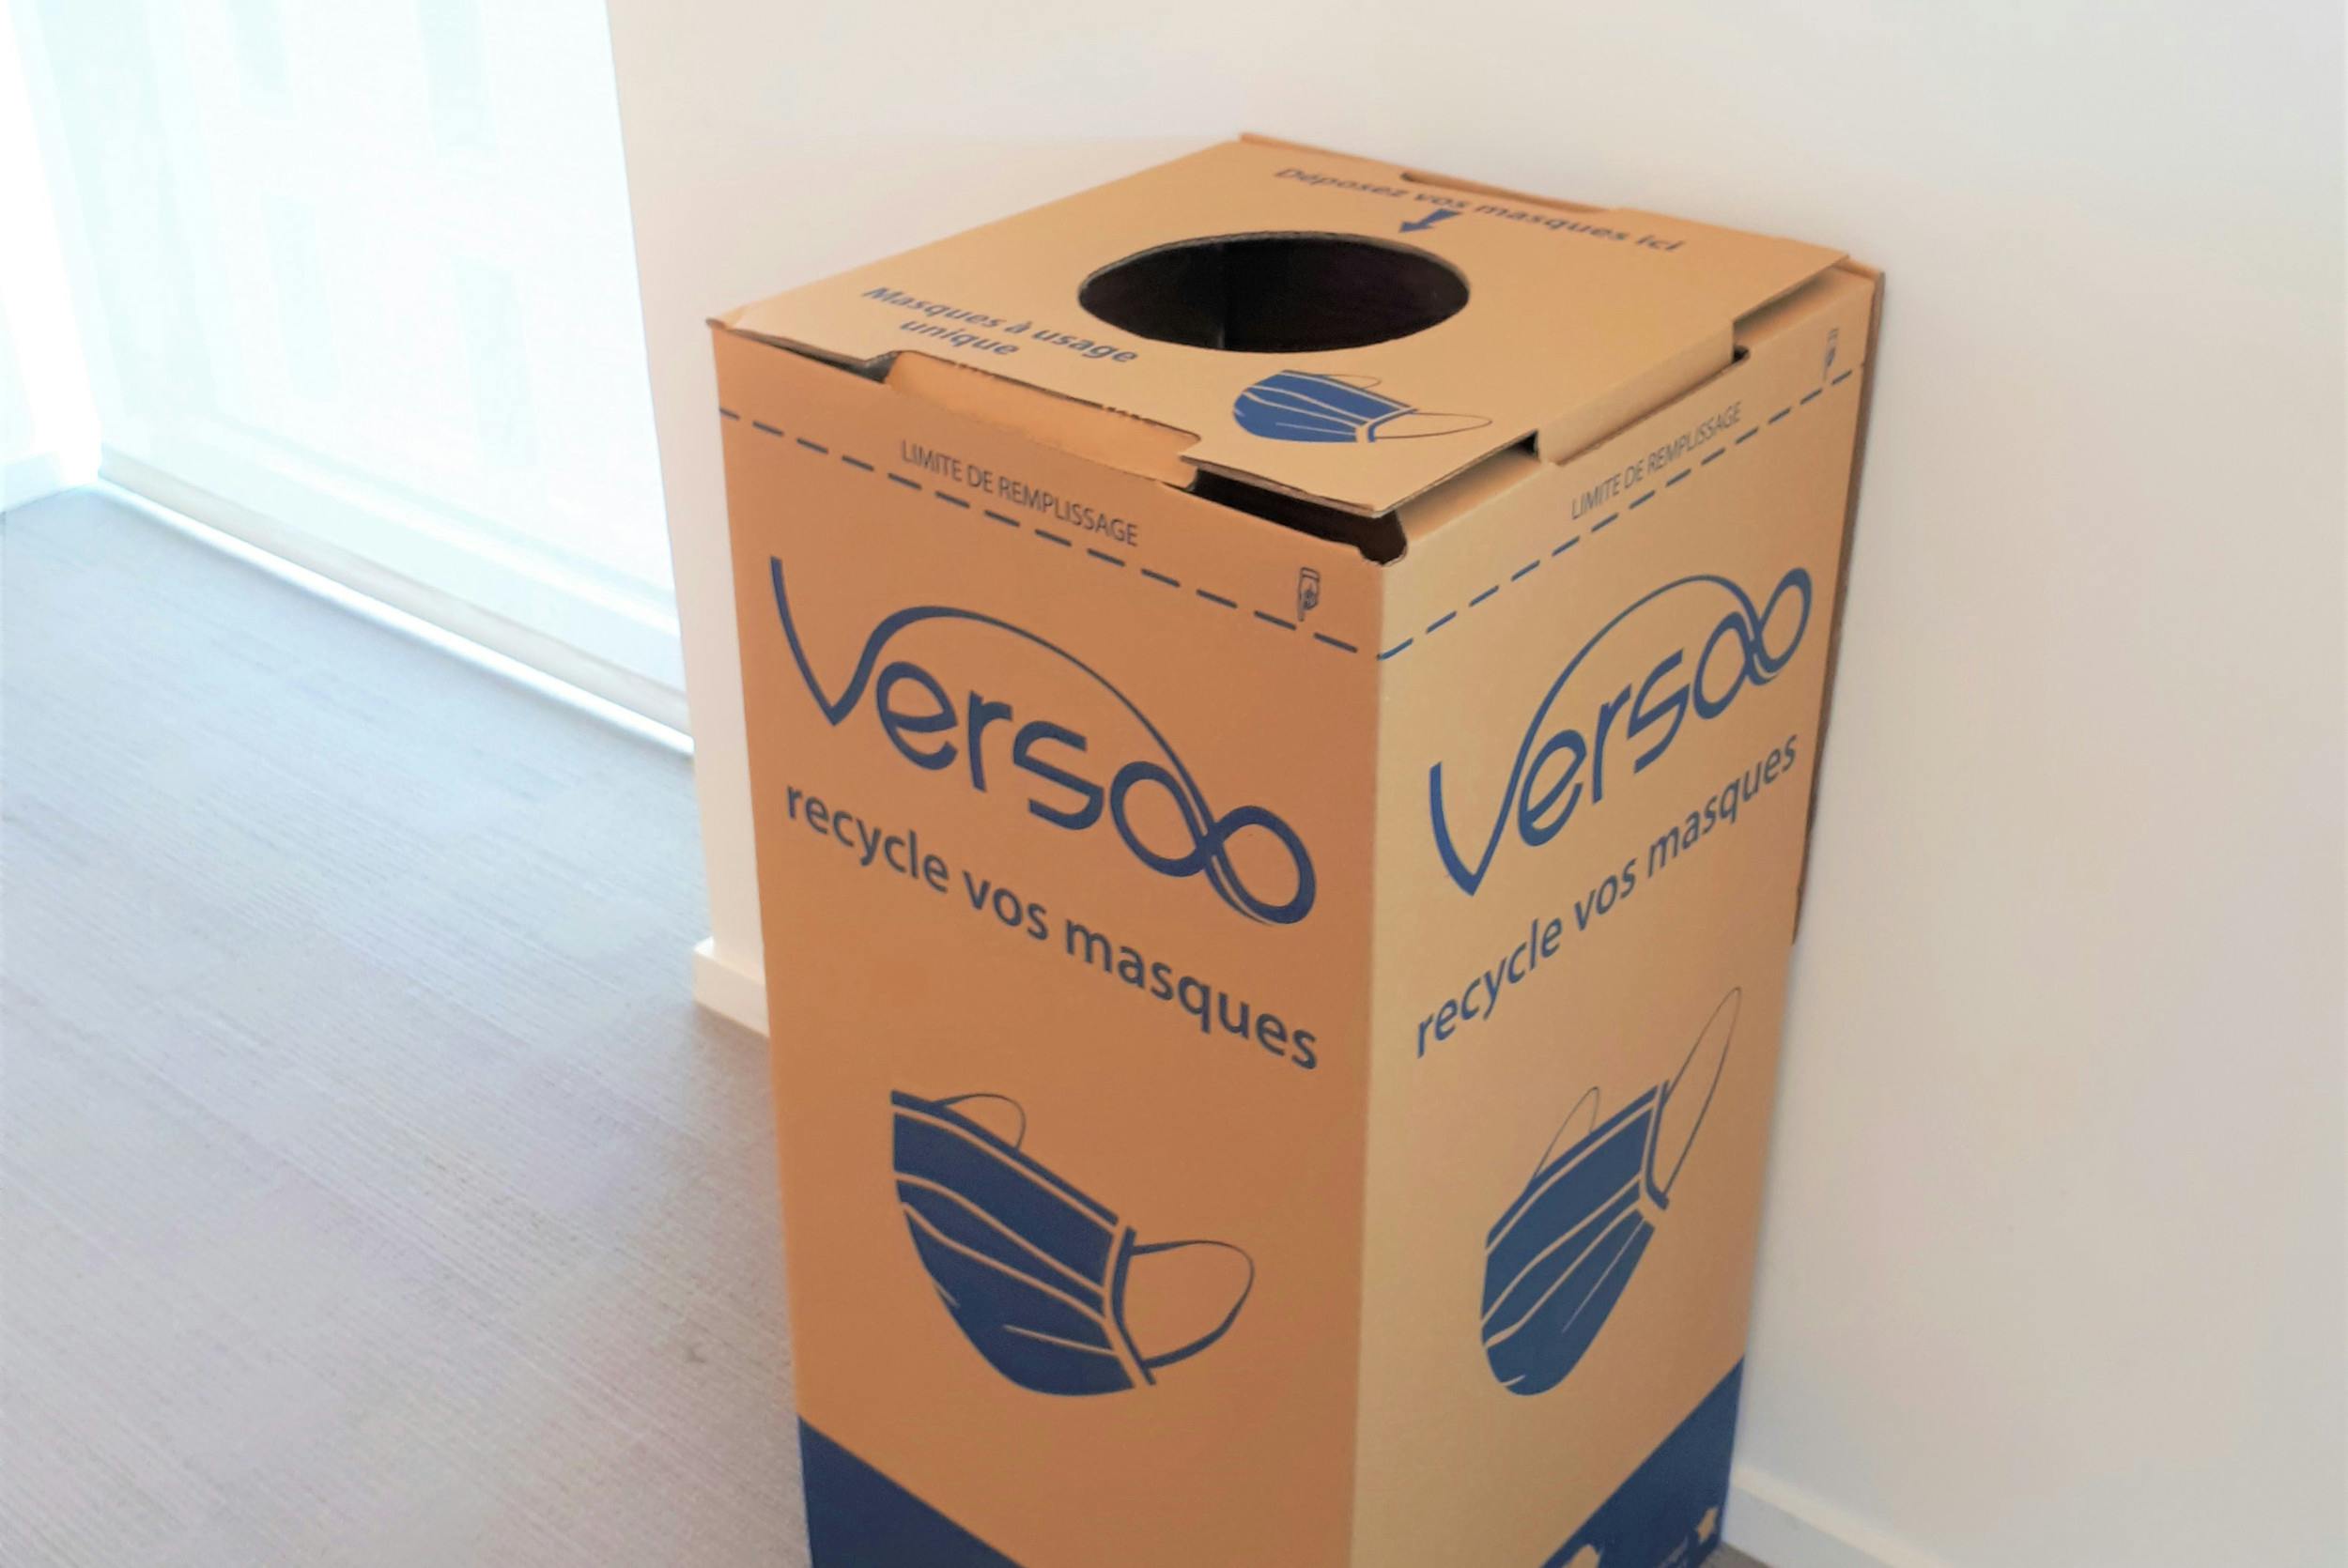 ECOBOX boîte de collecte pour le tri et recyclage des emballages